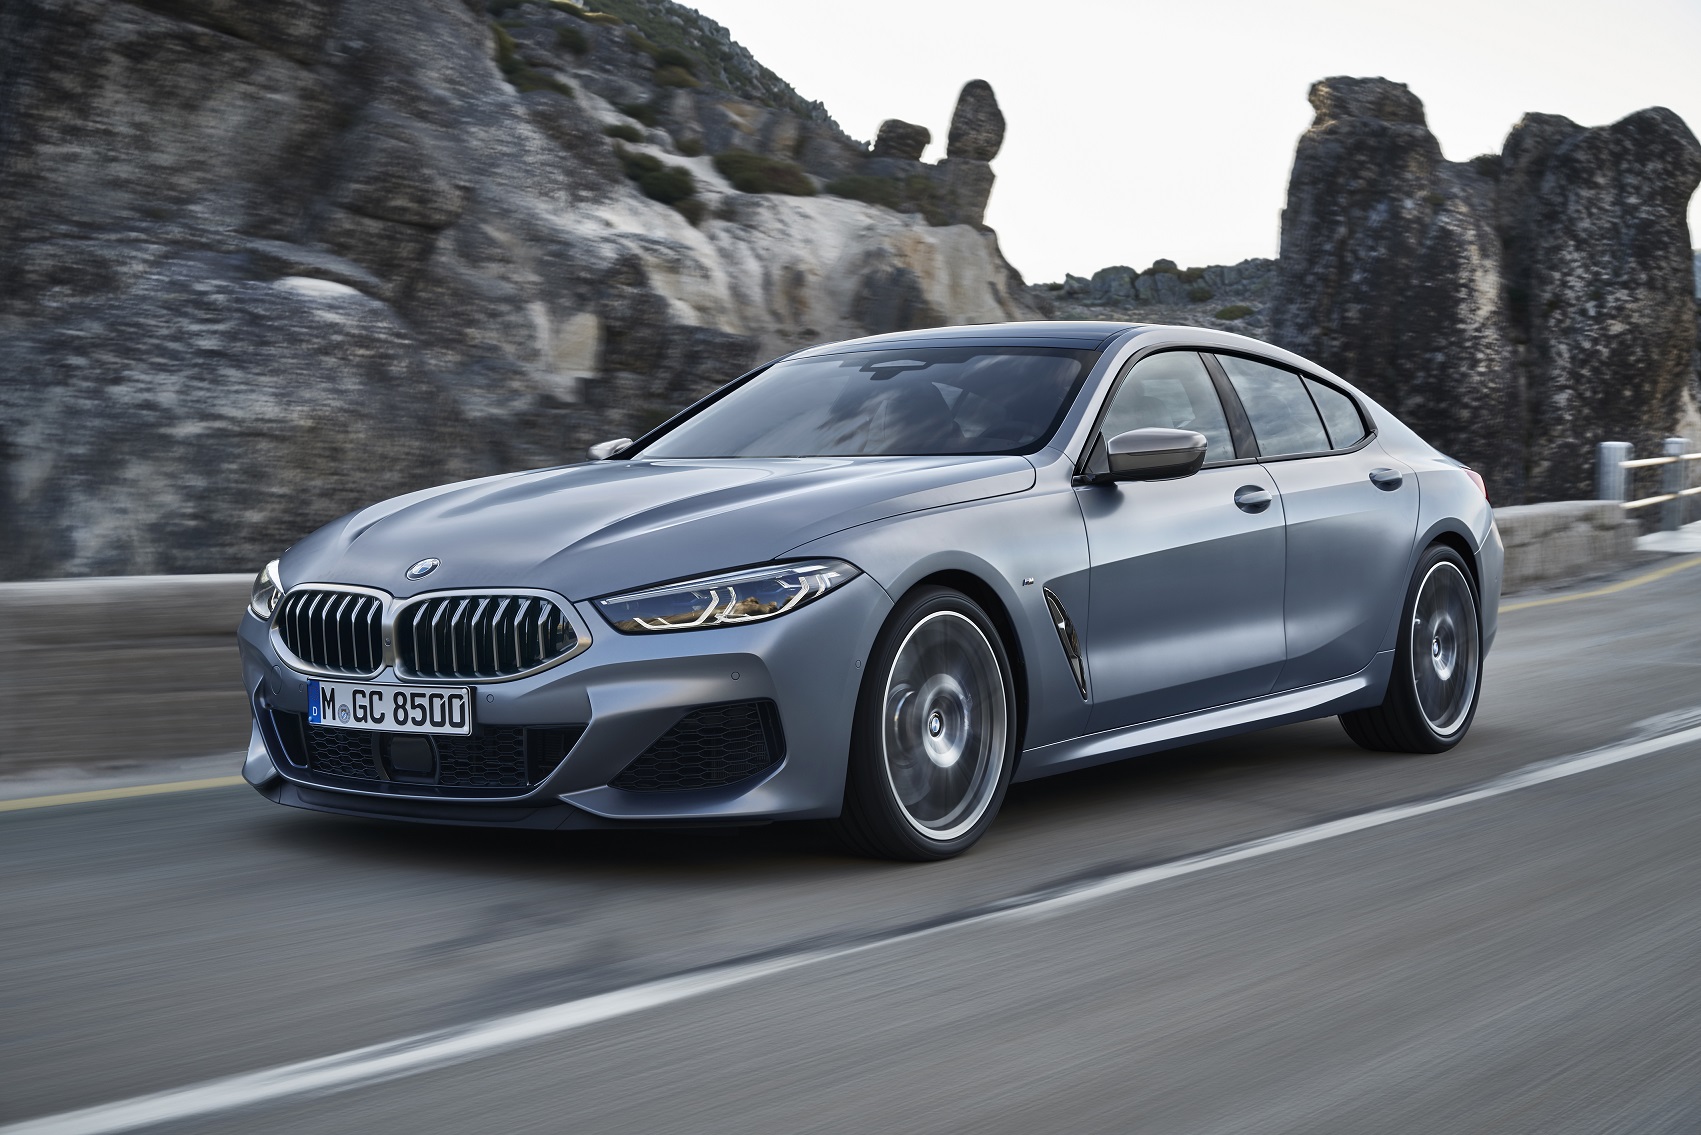 Yeni BMW 1 Serisi ve BMW 8 Serisi  Altın Direksiyon Ödülü’ne Layık Görüldü